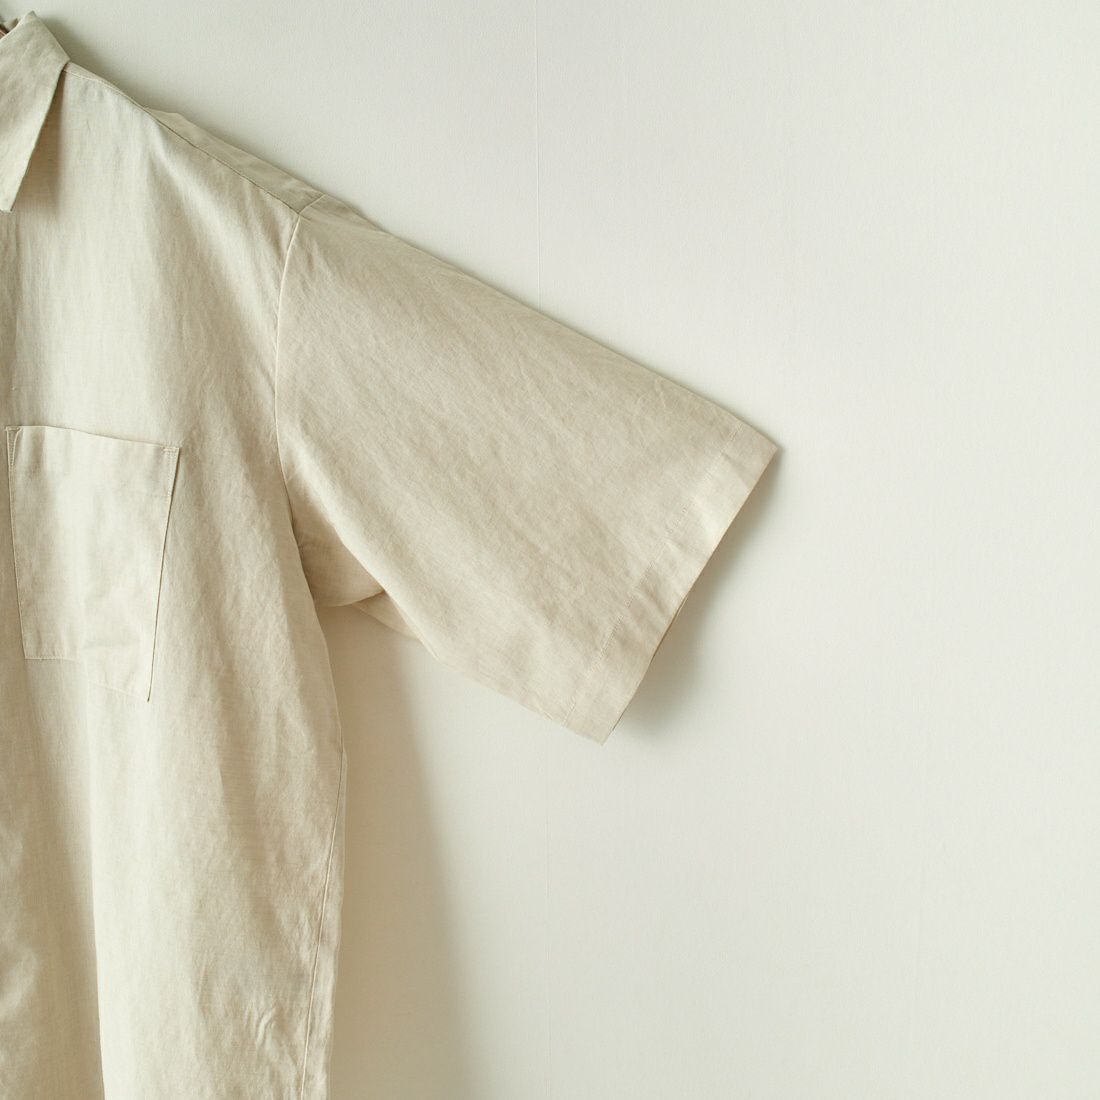 Jeans Factory Clothes [ジーンズファクトリークローズ] テックリネンワイドレギュラーカラーシャツ [EPC-33100] 1 O.WHITE